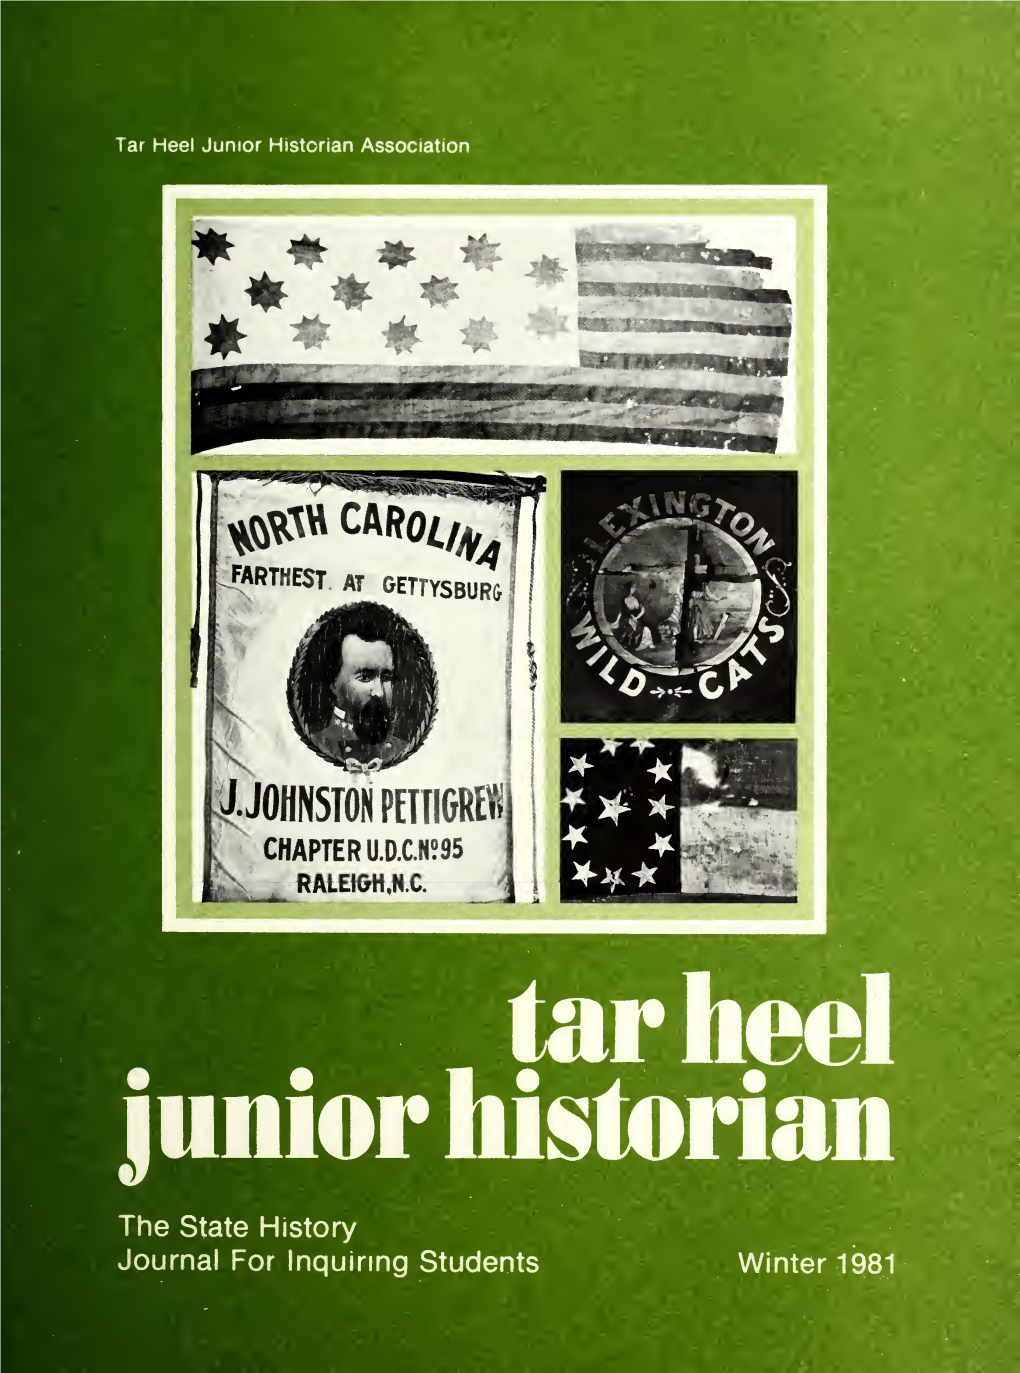 Tarheel Junior Historian